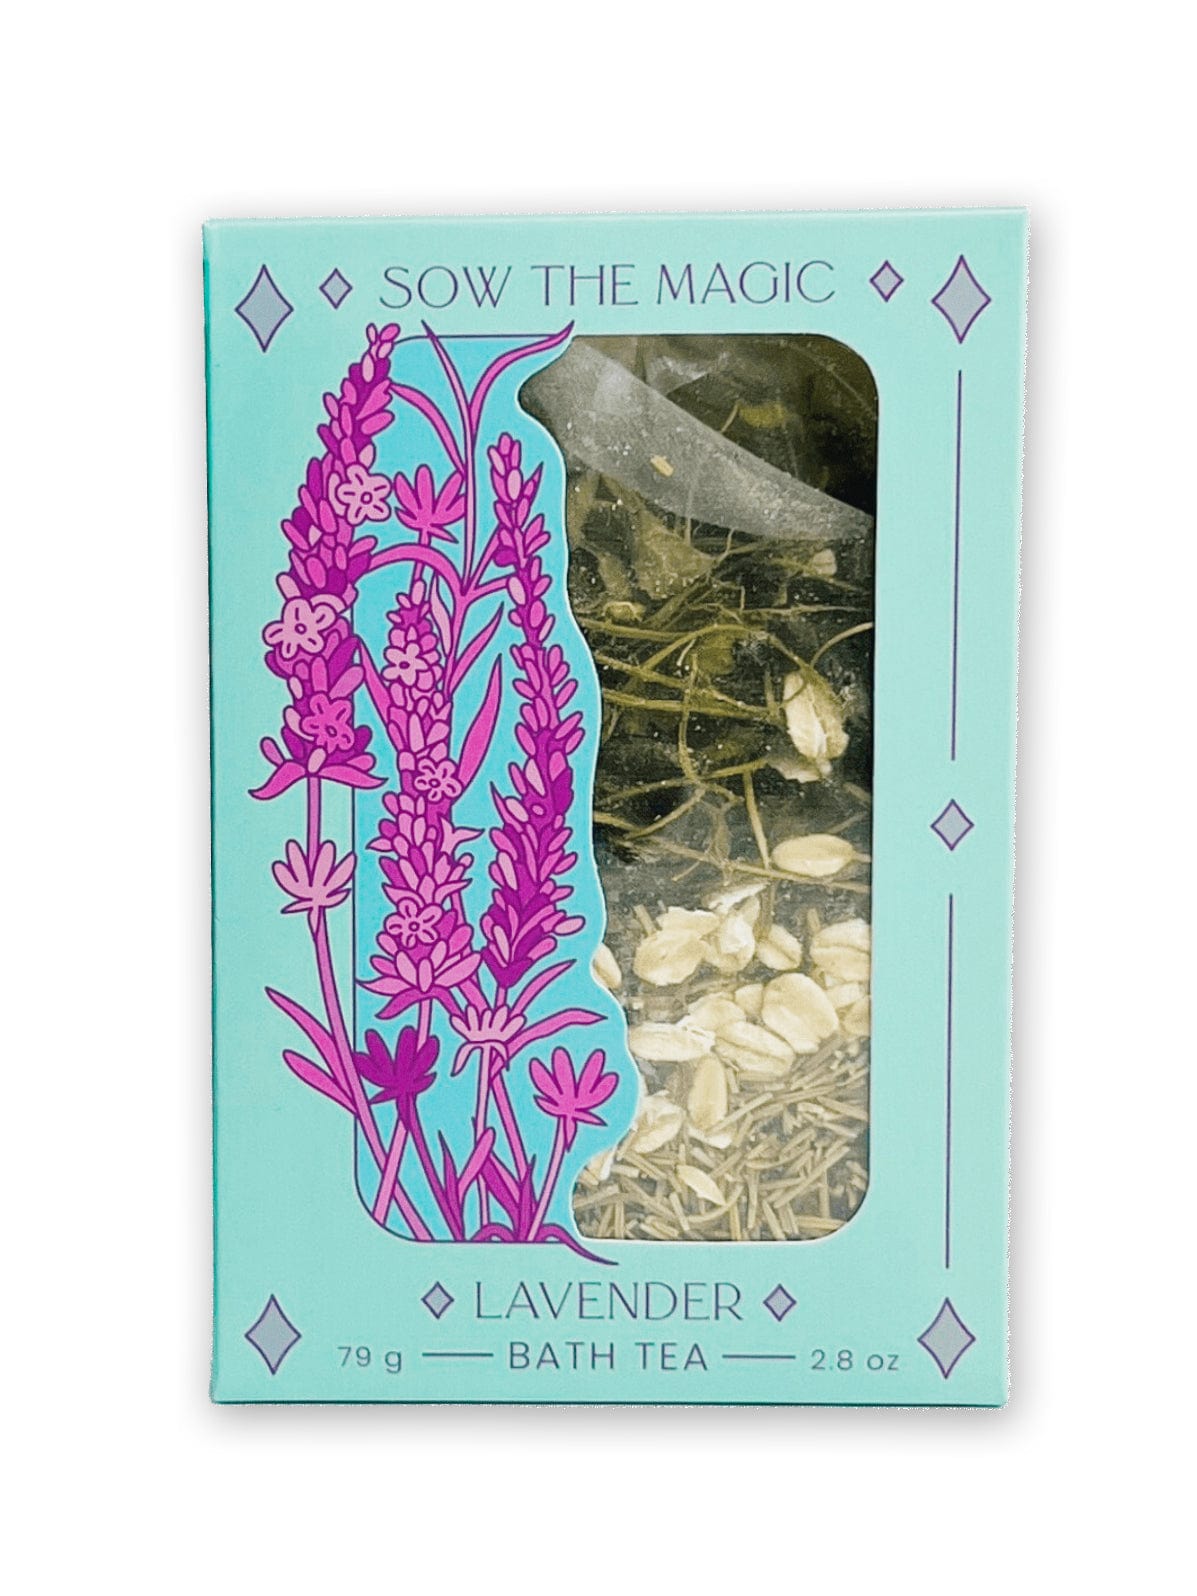 Sow the Magic Bath Tea Lavender Lovers Tarot Botanical Bath Tea Box